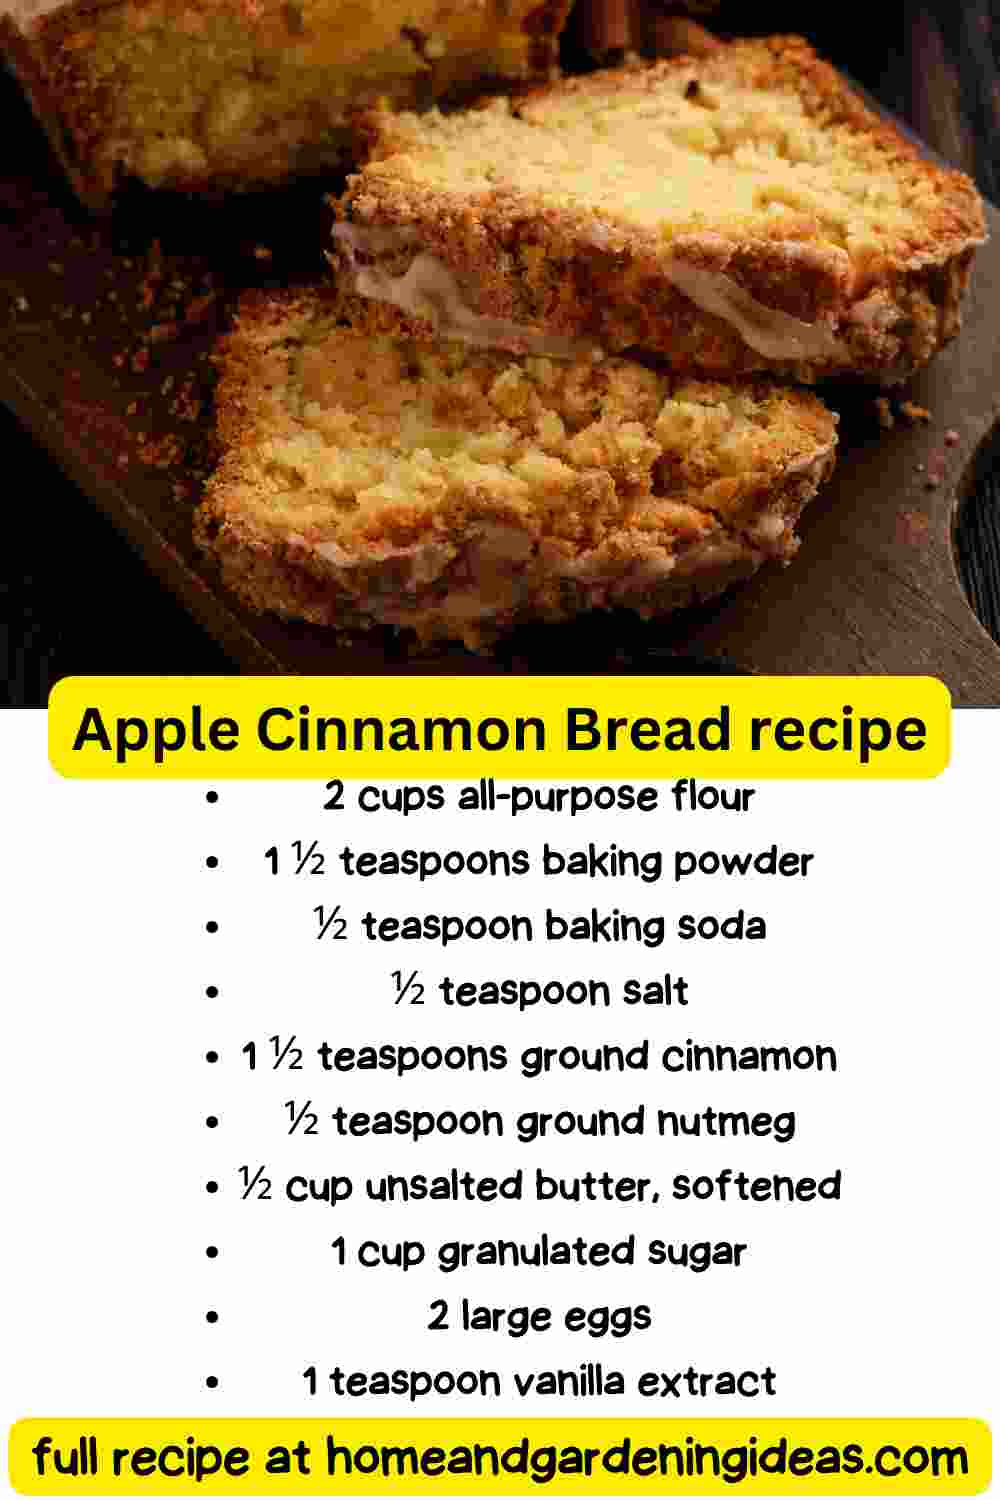 Apple Cinnamon Bread recipe (share)